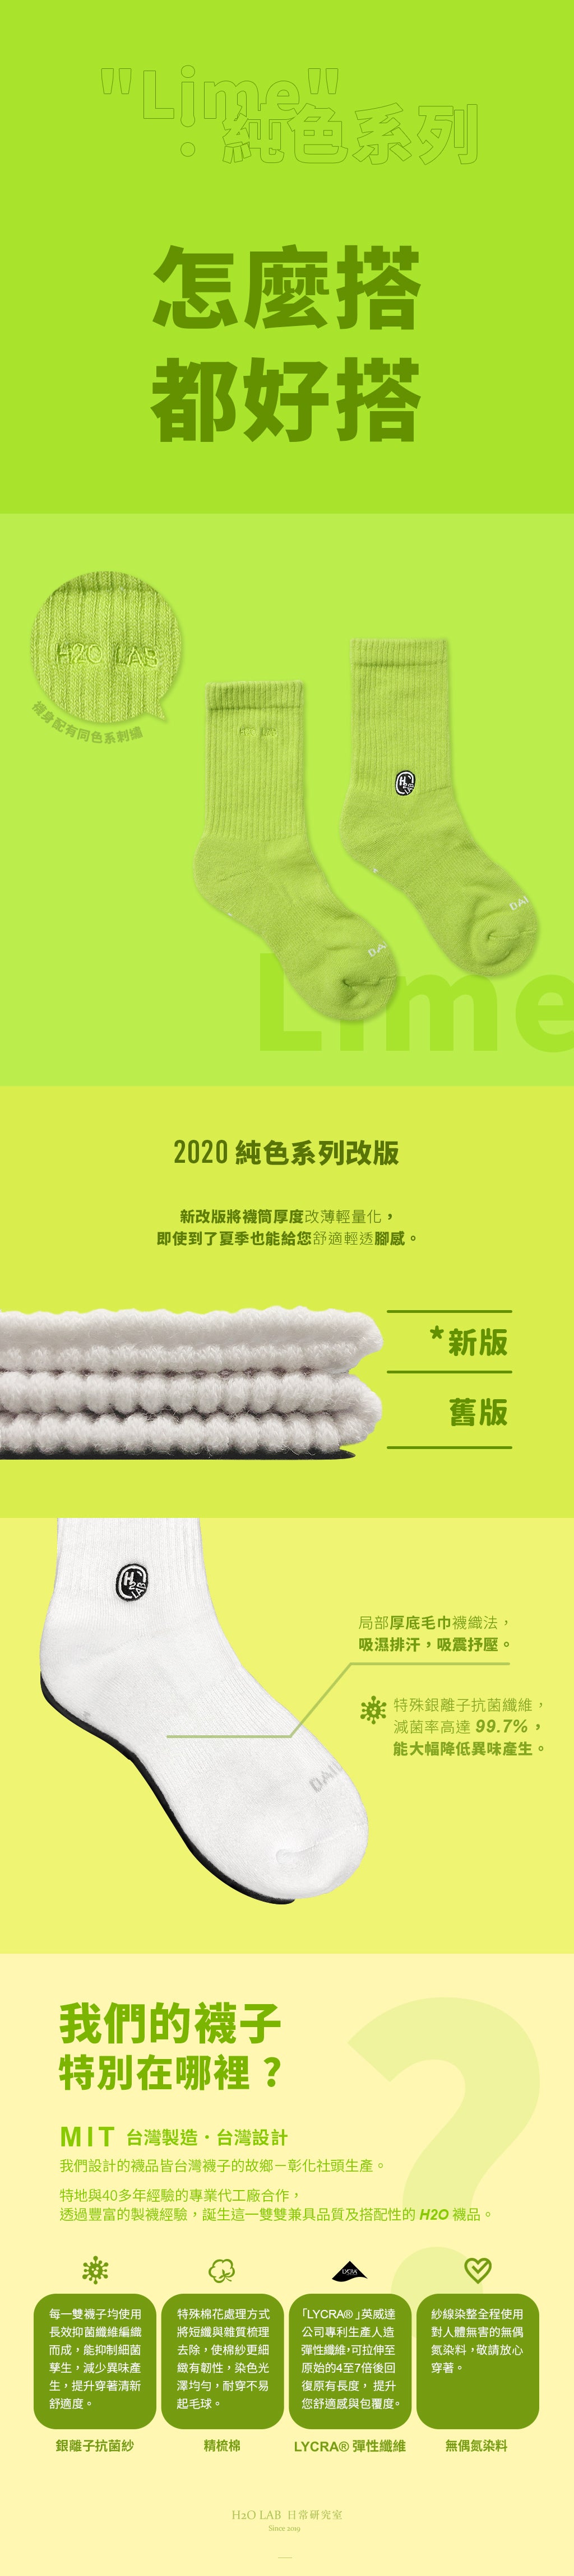 H2O " Lime " - Crew Socks [20SS01-GN]